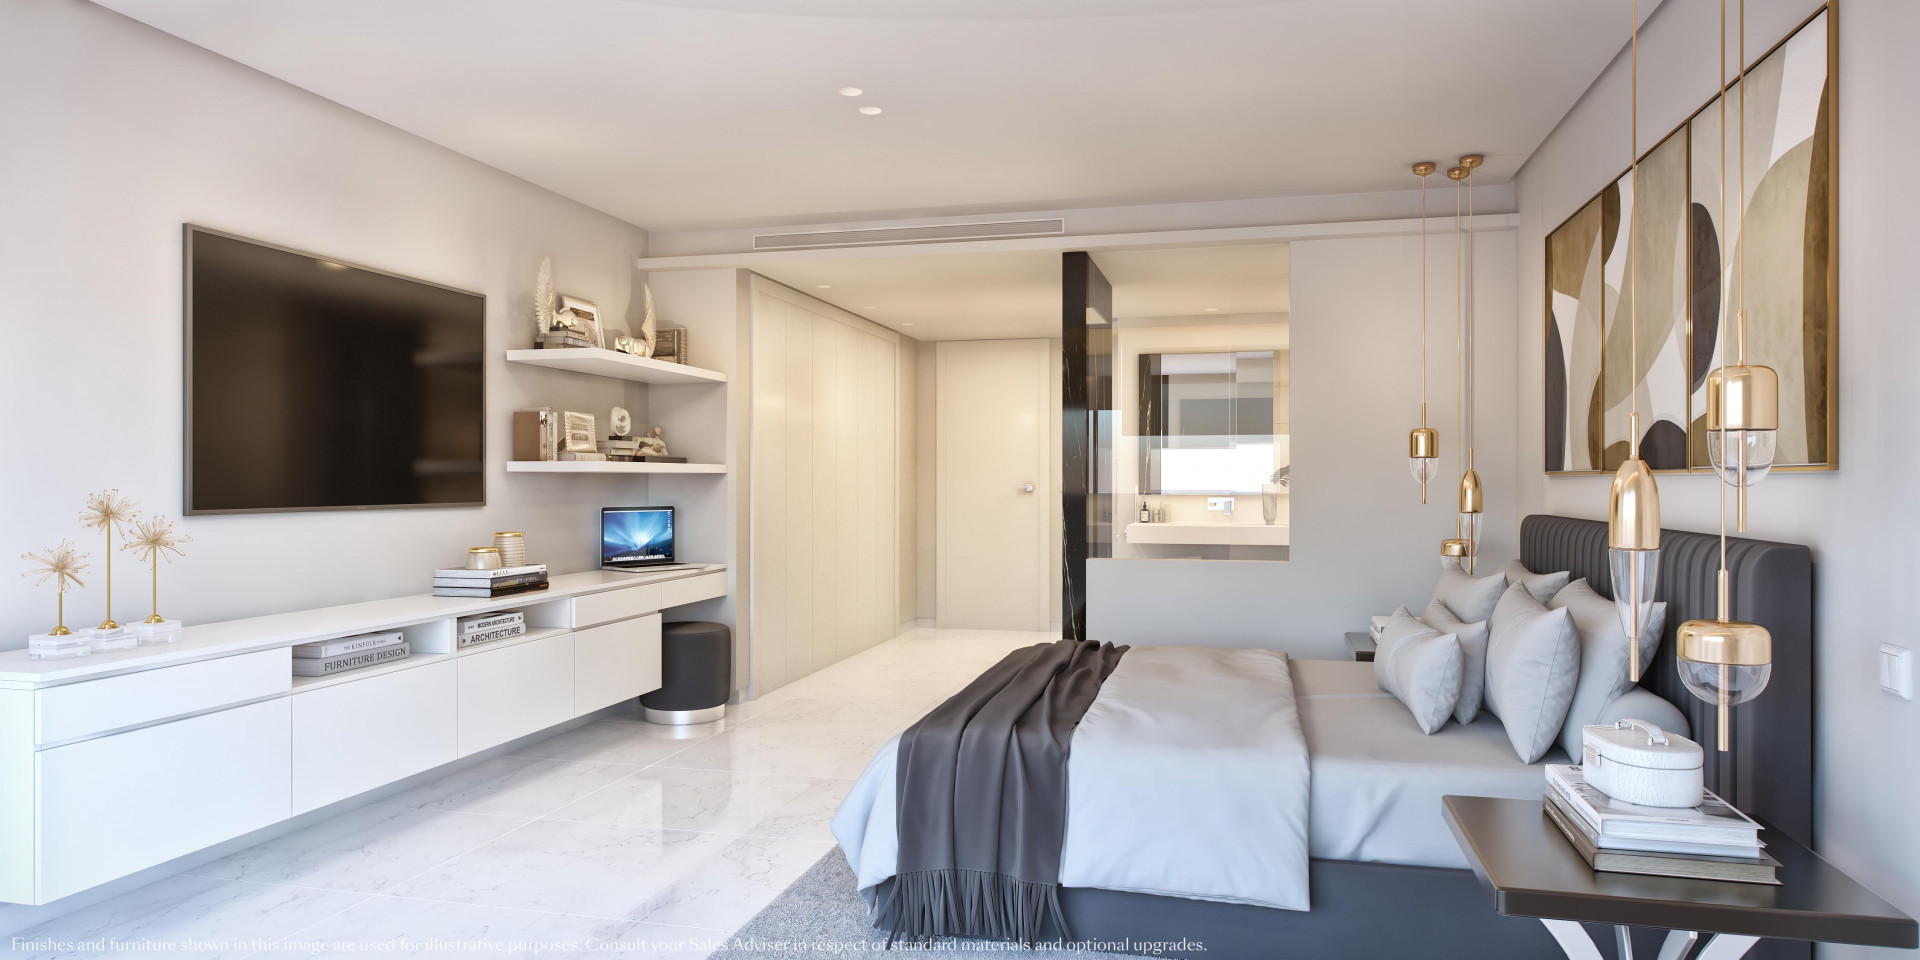 Stunning apartments designed by Villarroel Torrico in Marbella